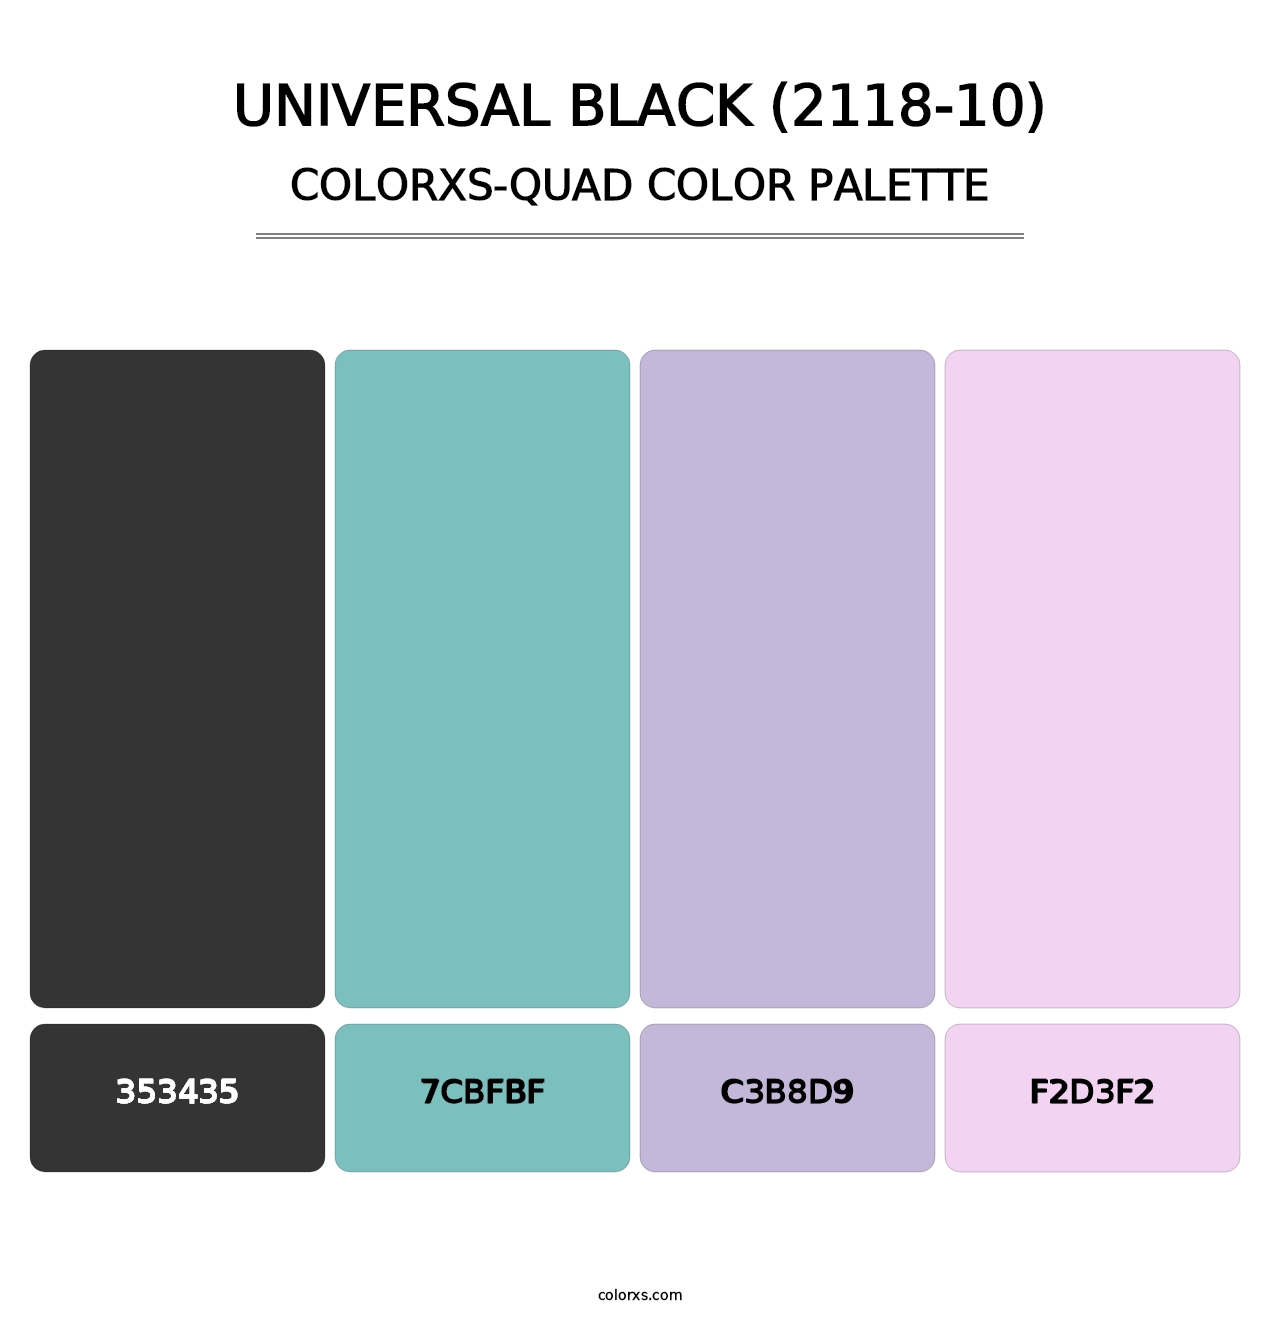 Universal Black (2118-10) - Colorxs Quad Palette